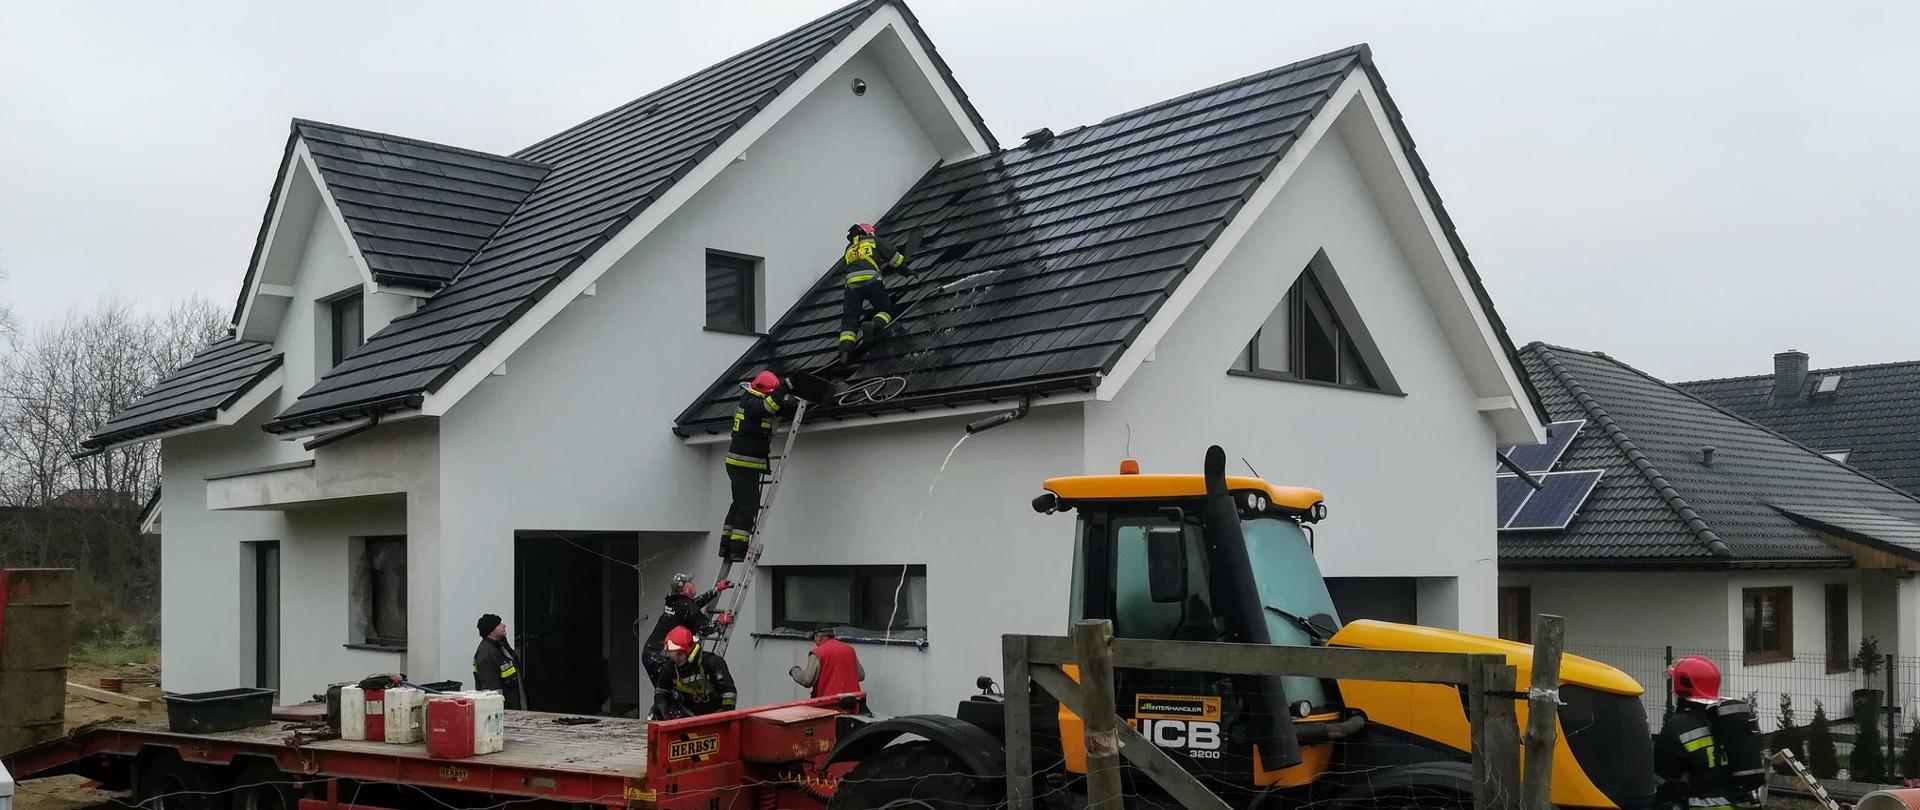 Dom jednorodzinny, na podwórku traktor, na dach budynku wchodzą po drabinie strażacy